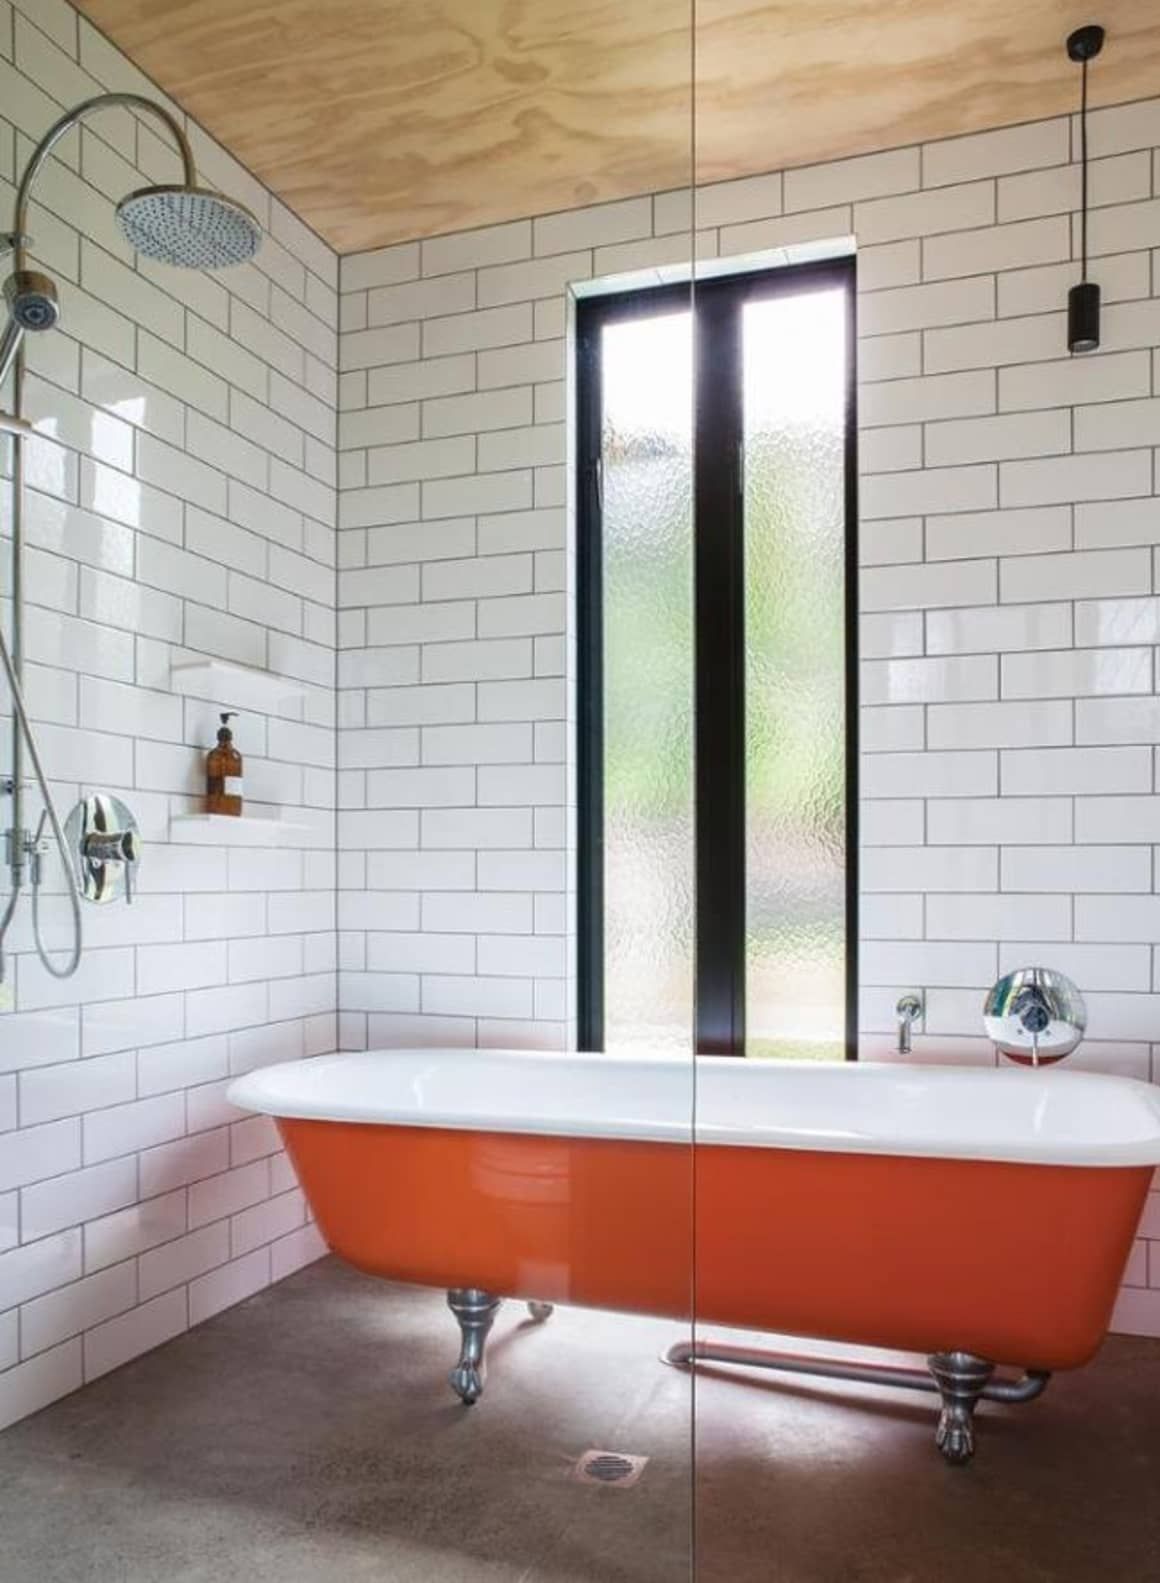 Cho căn phòng tắm gia đình thêm phần rực rỡ với điểm nhấn là chiếc bồn tắm đầy màu sắc - Ảnh 10.